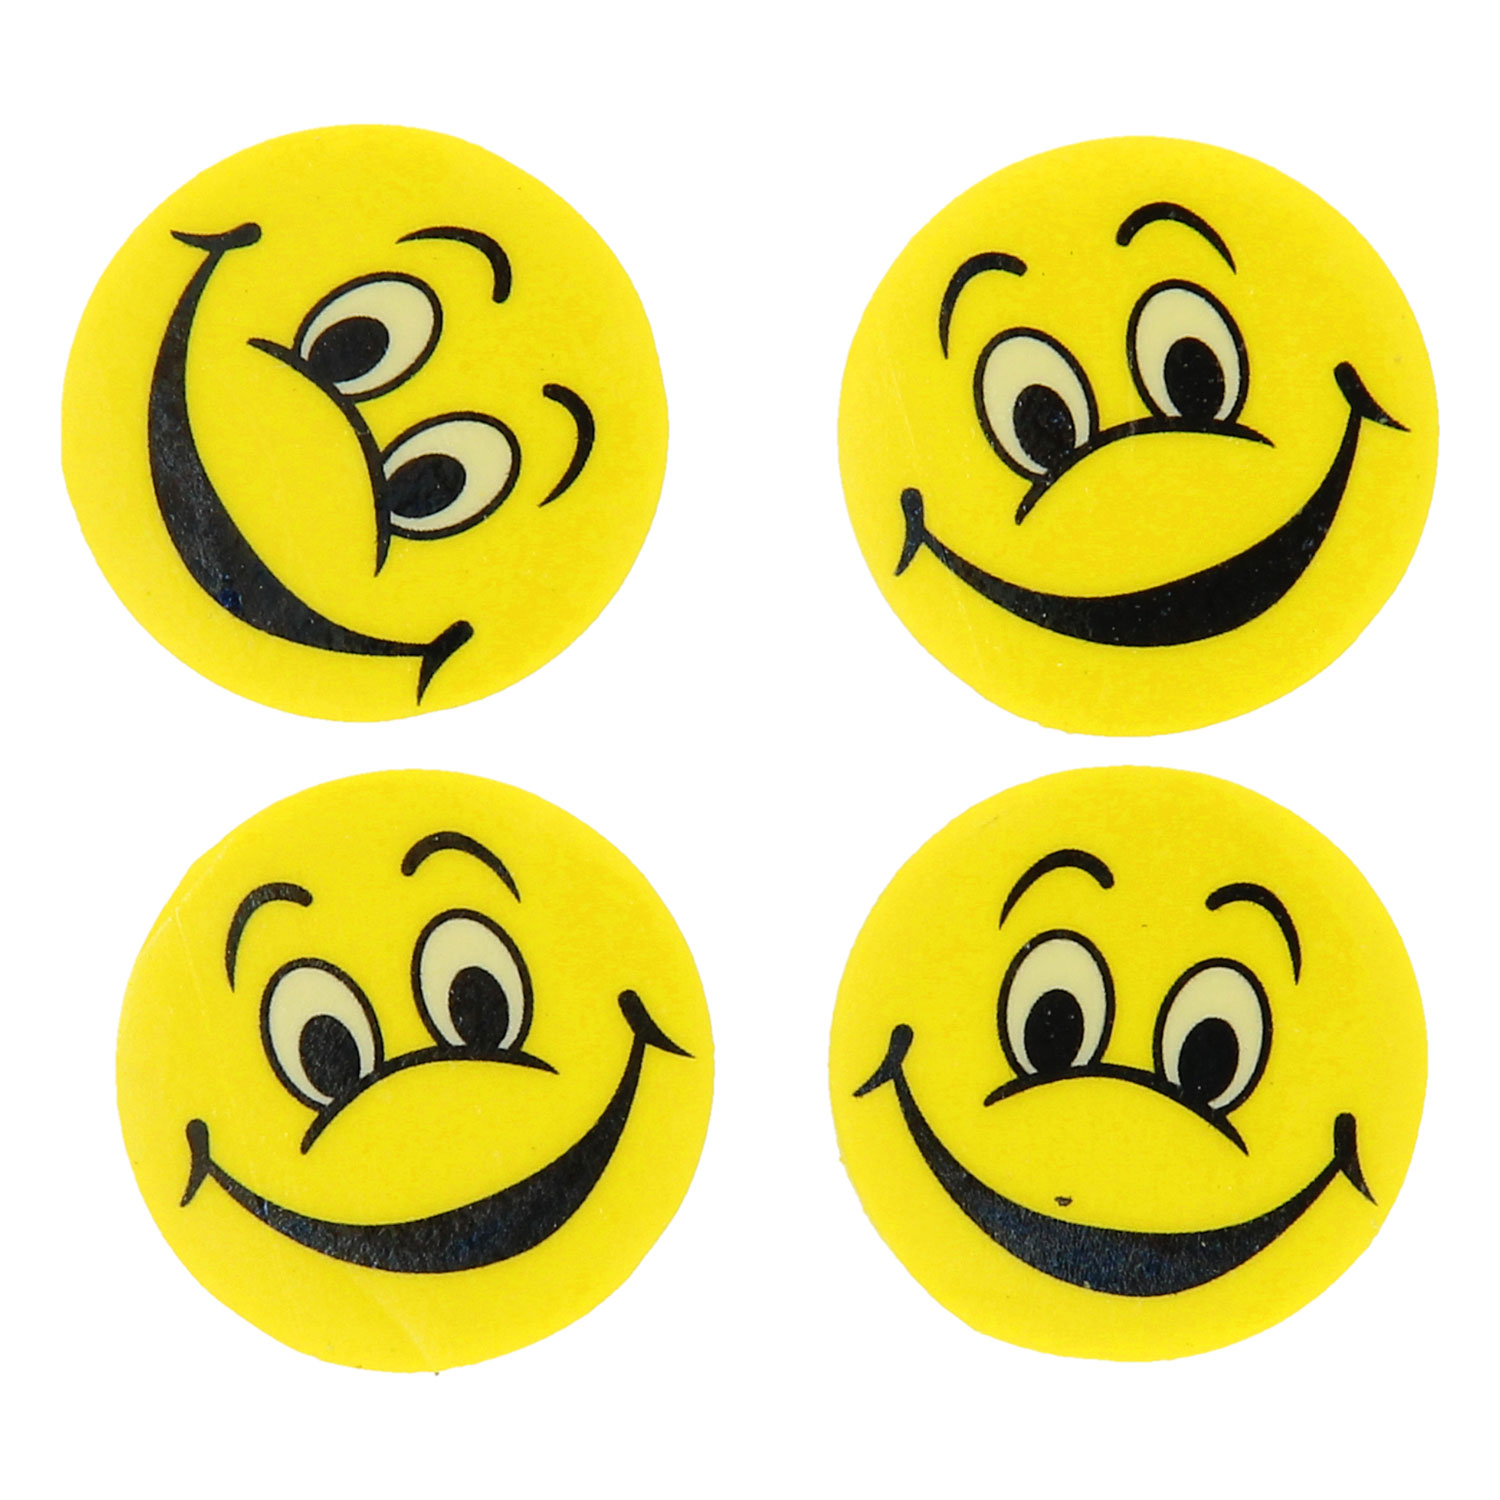 Radiergummi mit Smiley-Gesicht, 4 Stück.